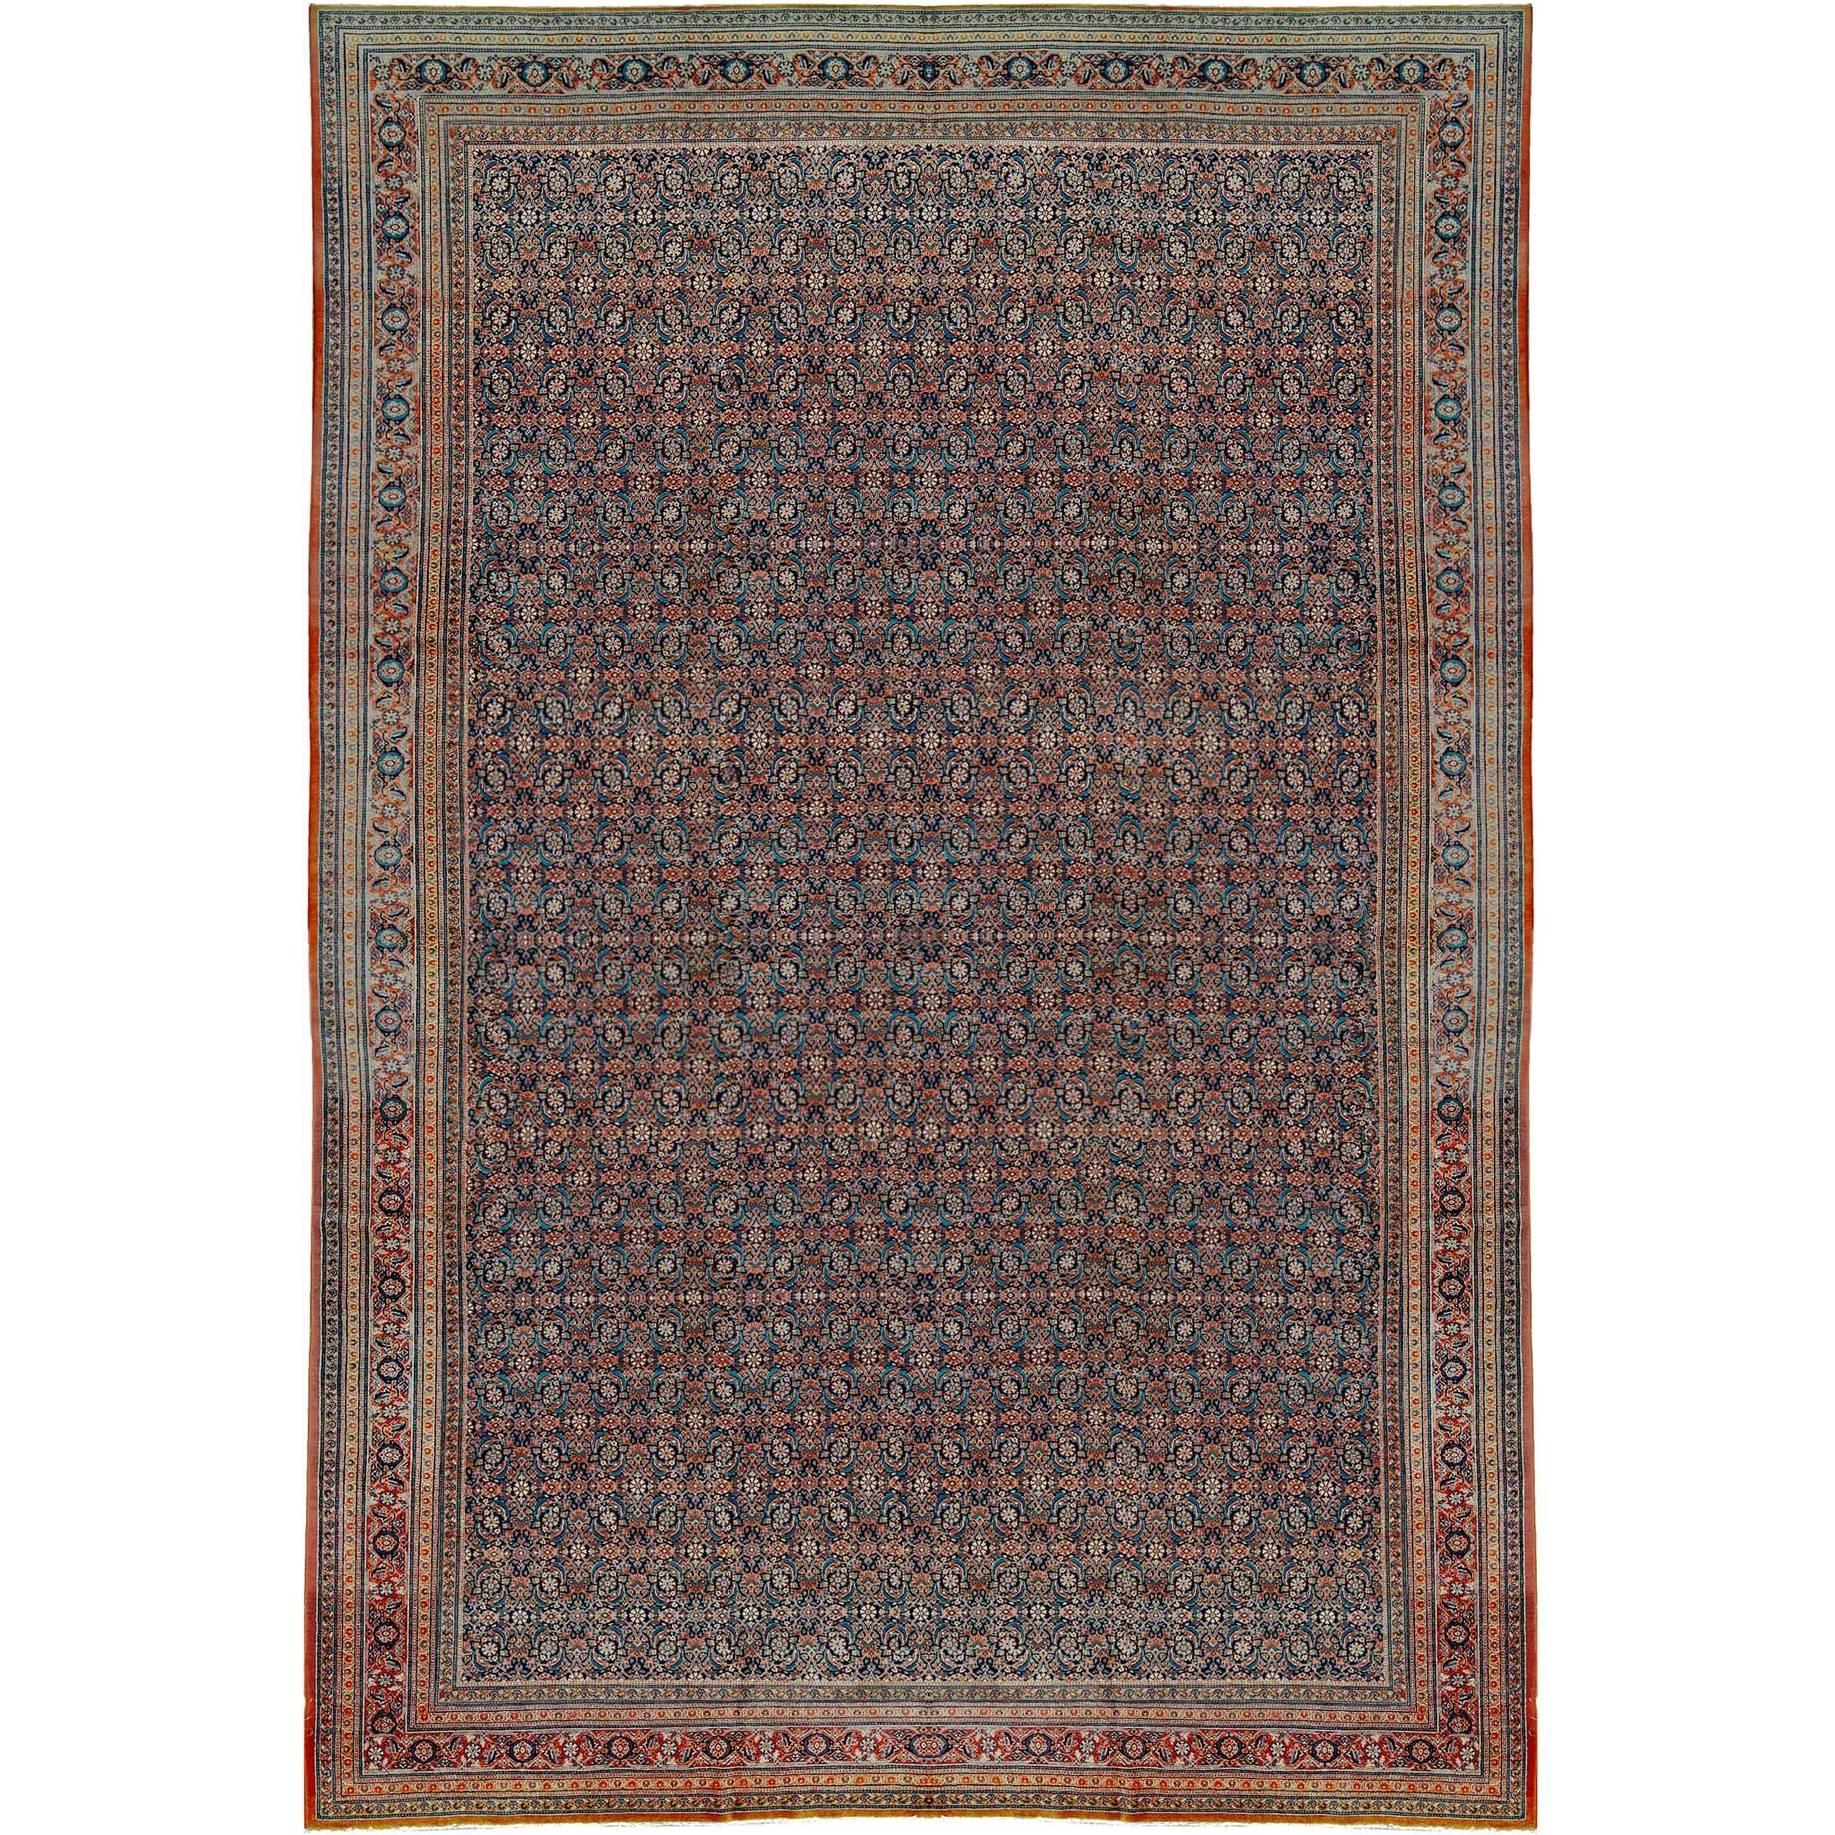 Antique Persian Fine Tabriz Rug, circa 1900